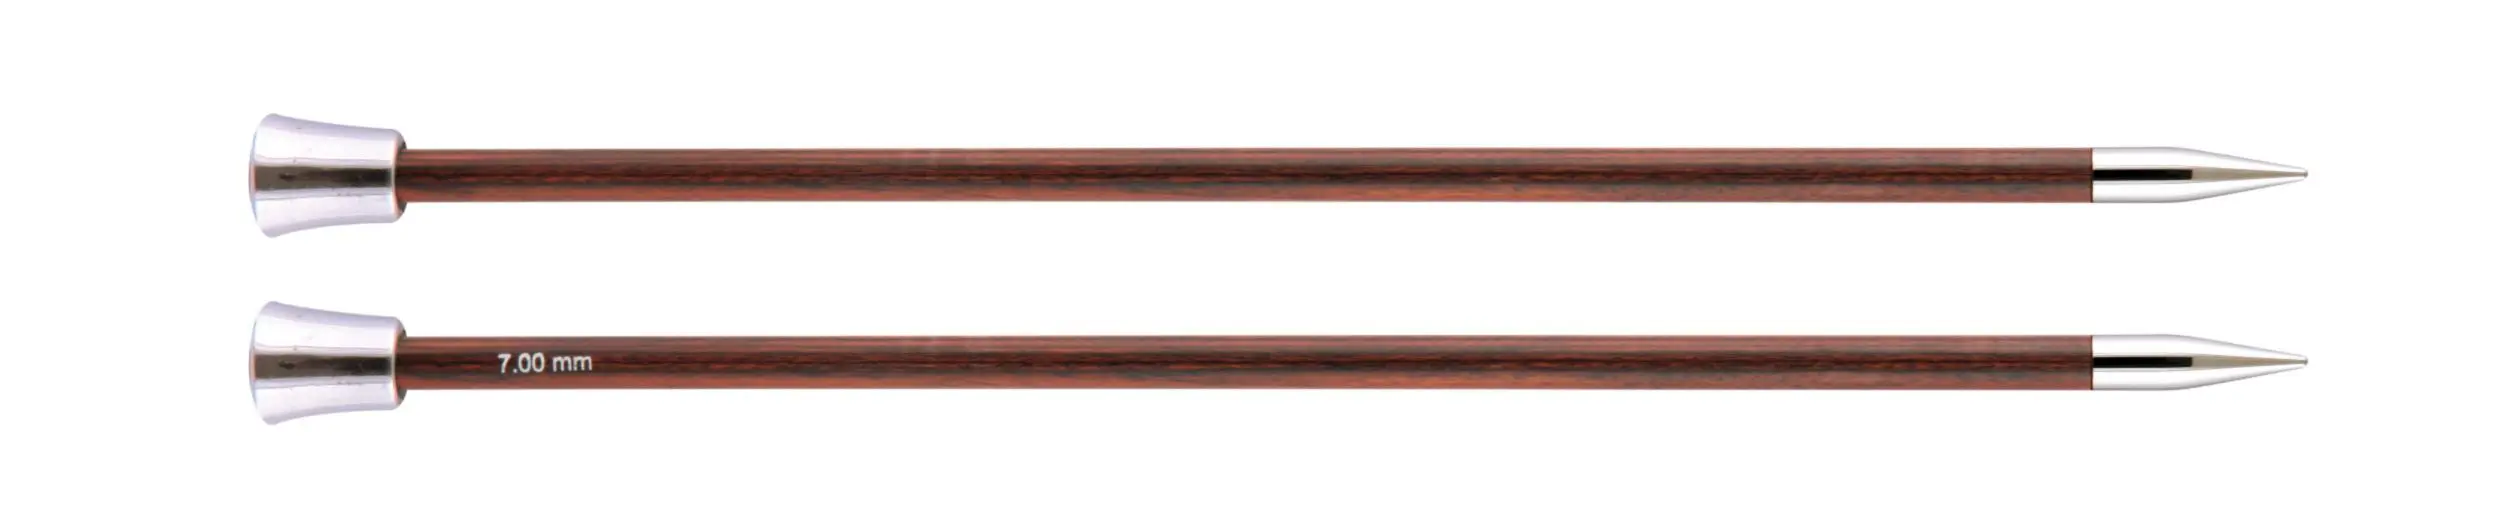 29221 Спиці прямі Royale KnitPro, 35 см, 7.00 мм